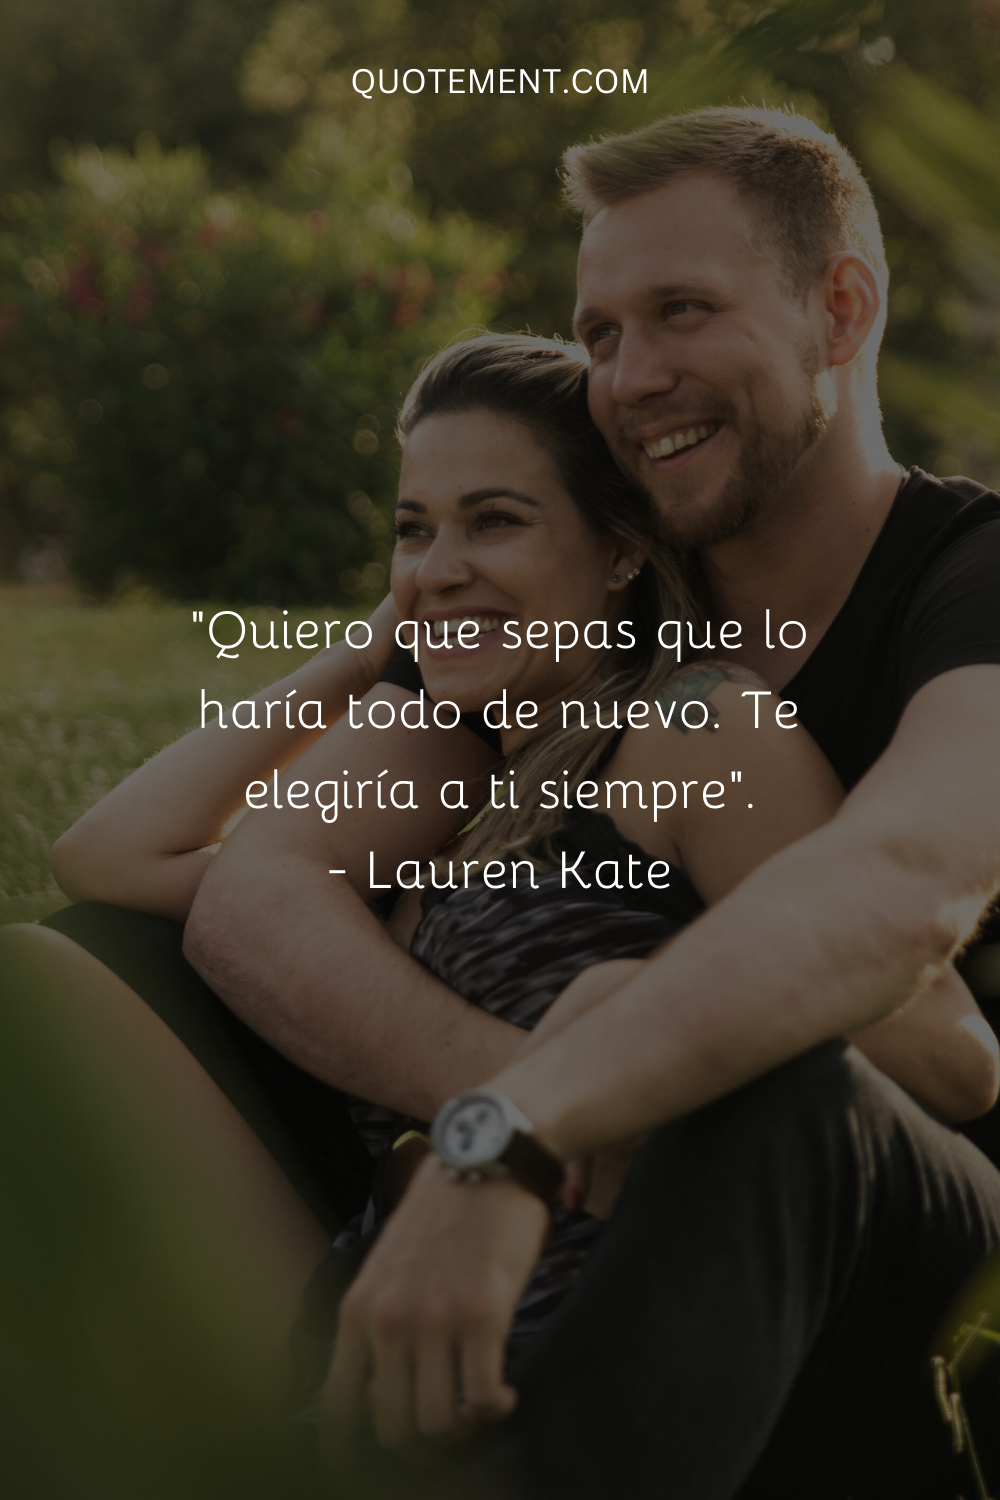 "Quiero que sepas que lo haría todo de nuevo. Te elegiría a ti siempre". - Lauren Kate